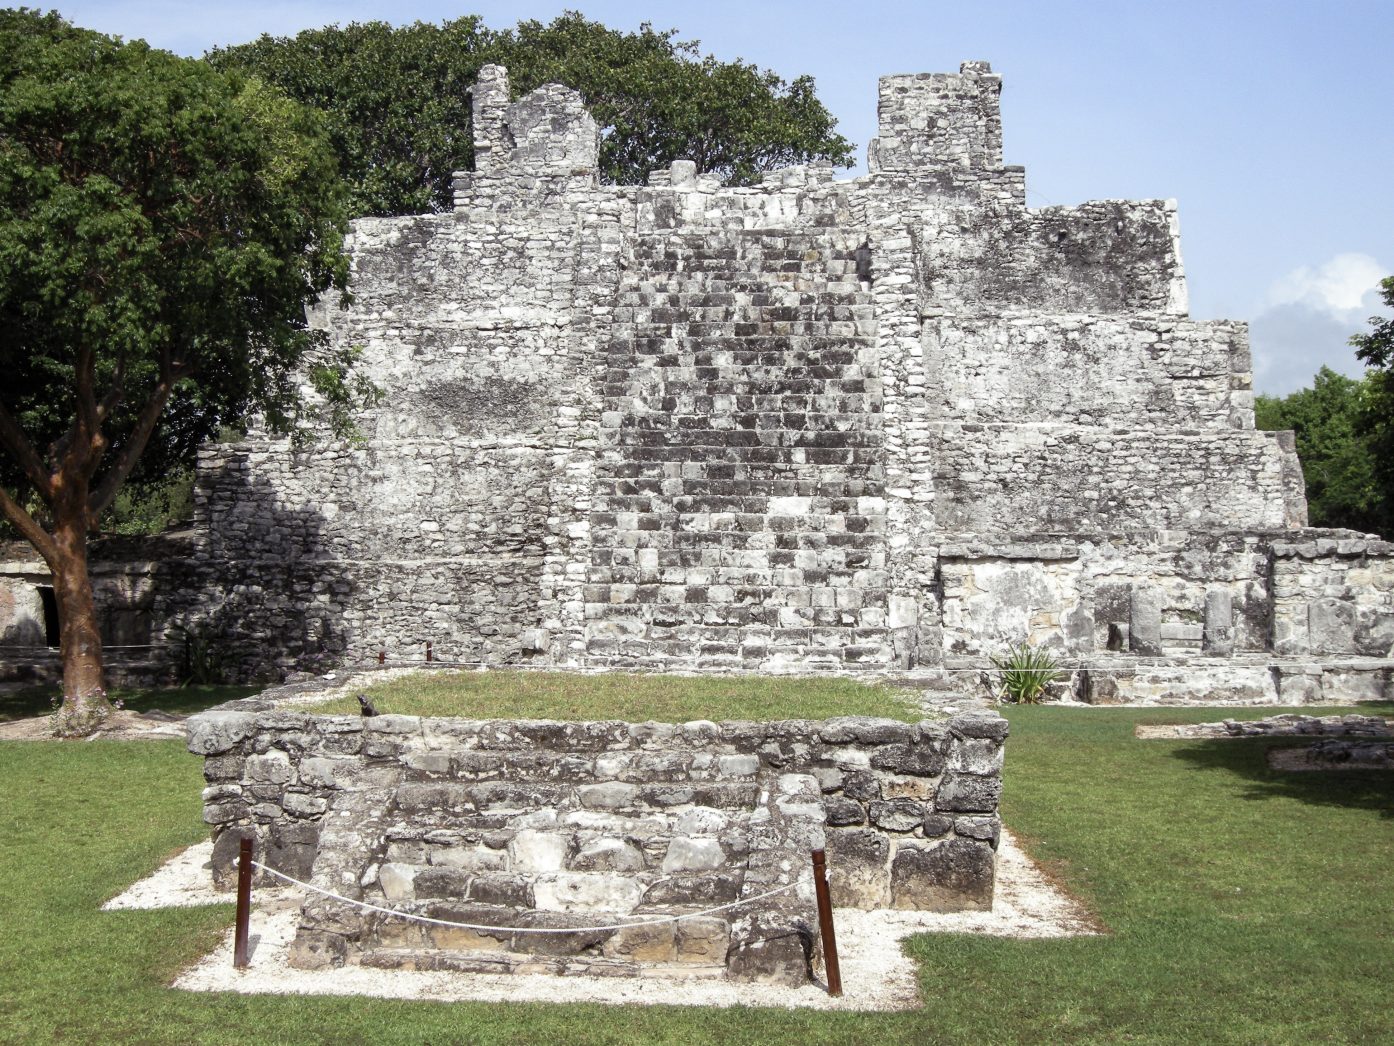 El Castillo Mayan pyramid in El Meco ruins in Cancun.